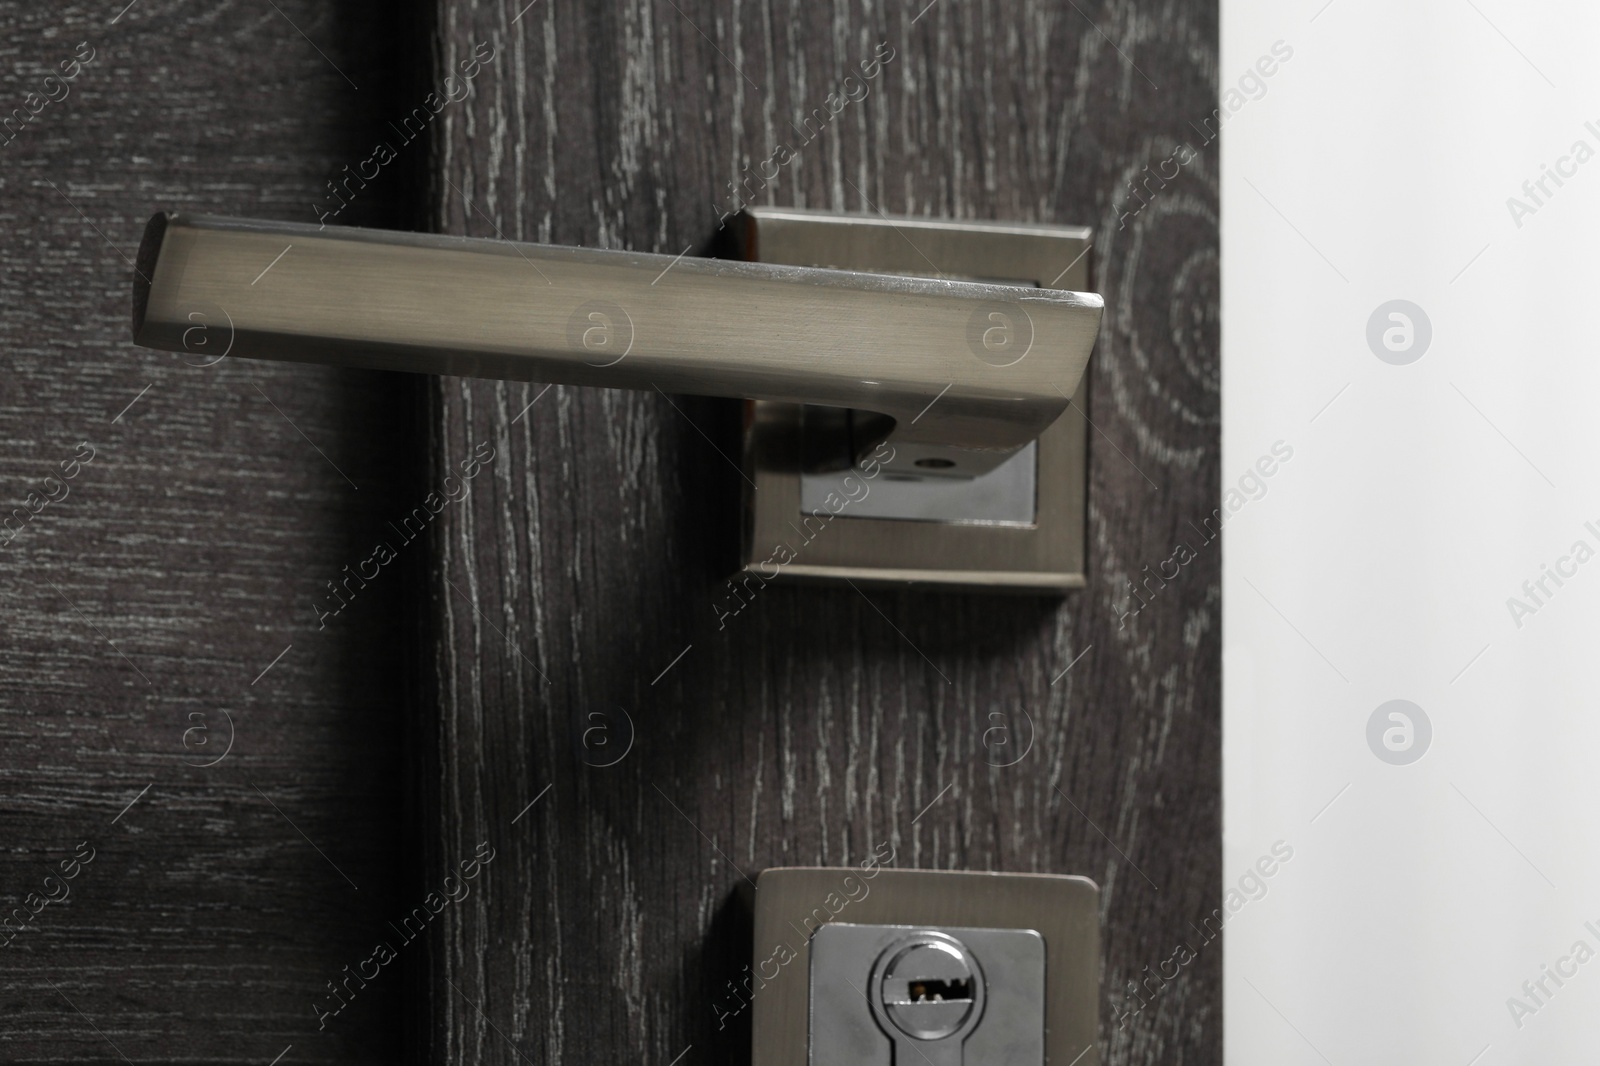 Photo of Open wooden door with metal handle, closeup